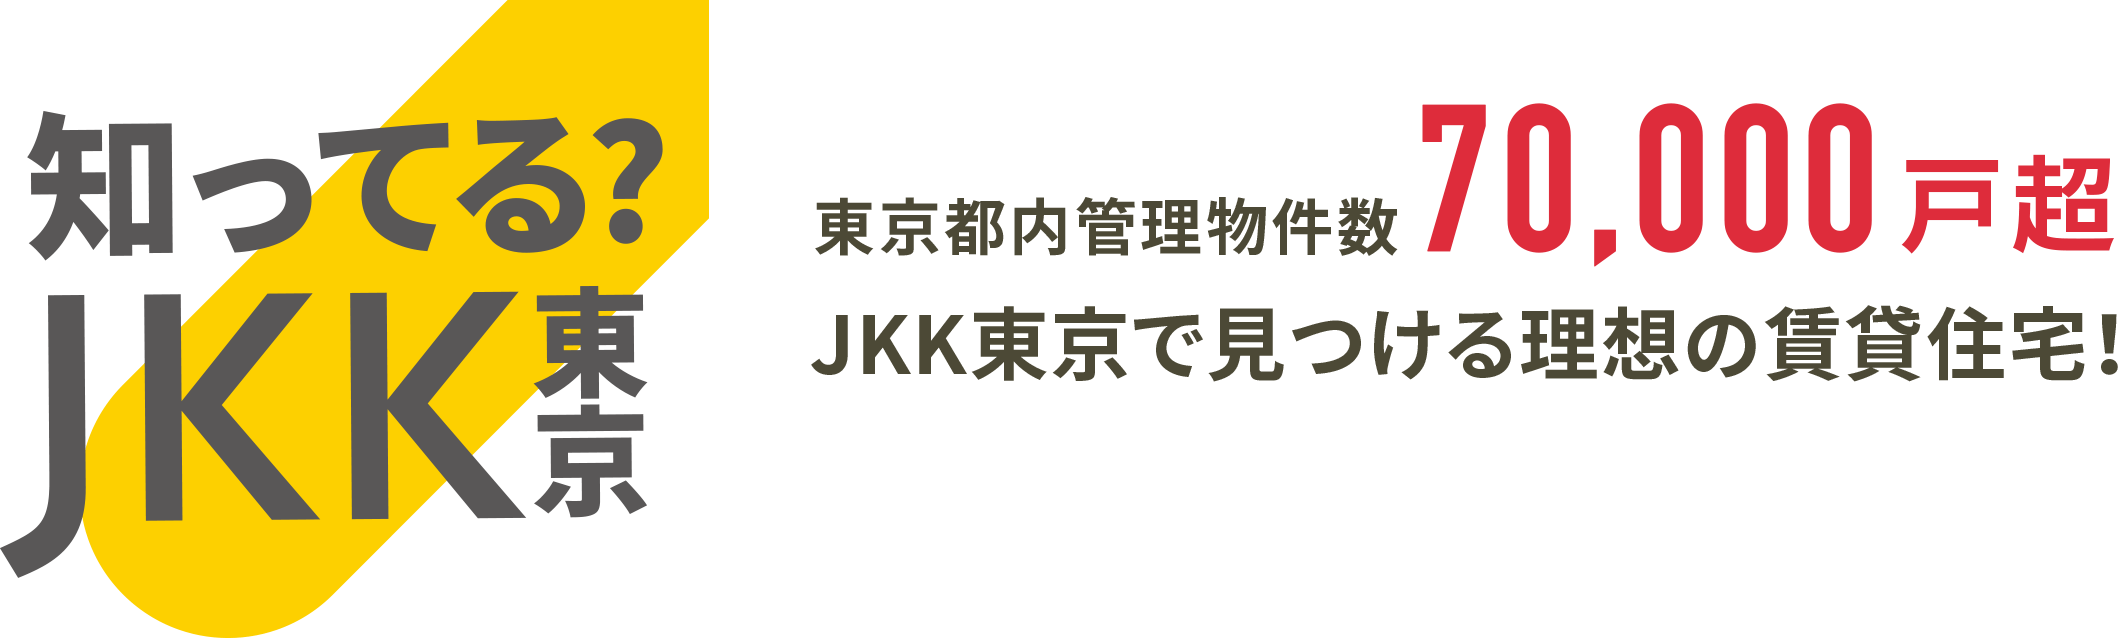 知ってる？JKK東京 東京都内管理物件数70,000戸超 JKK東京で見つける理想の賃貸住宅！